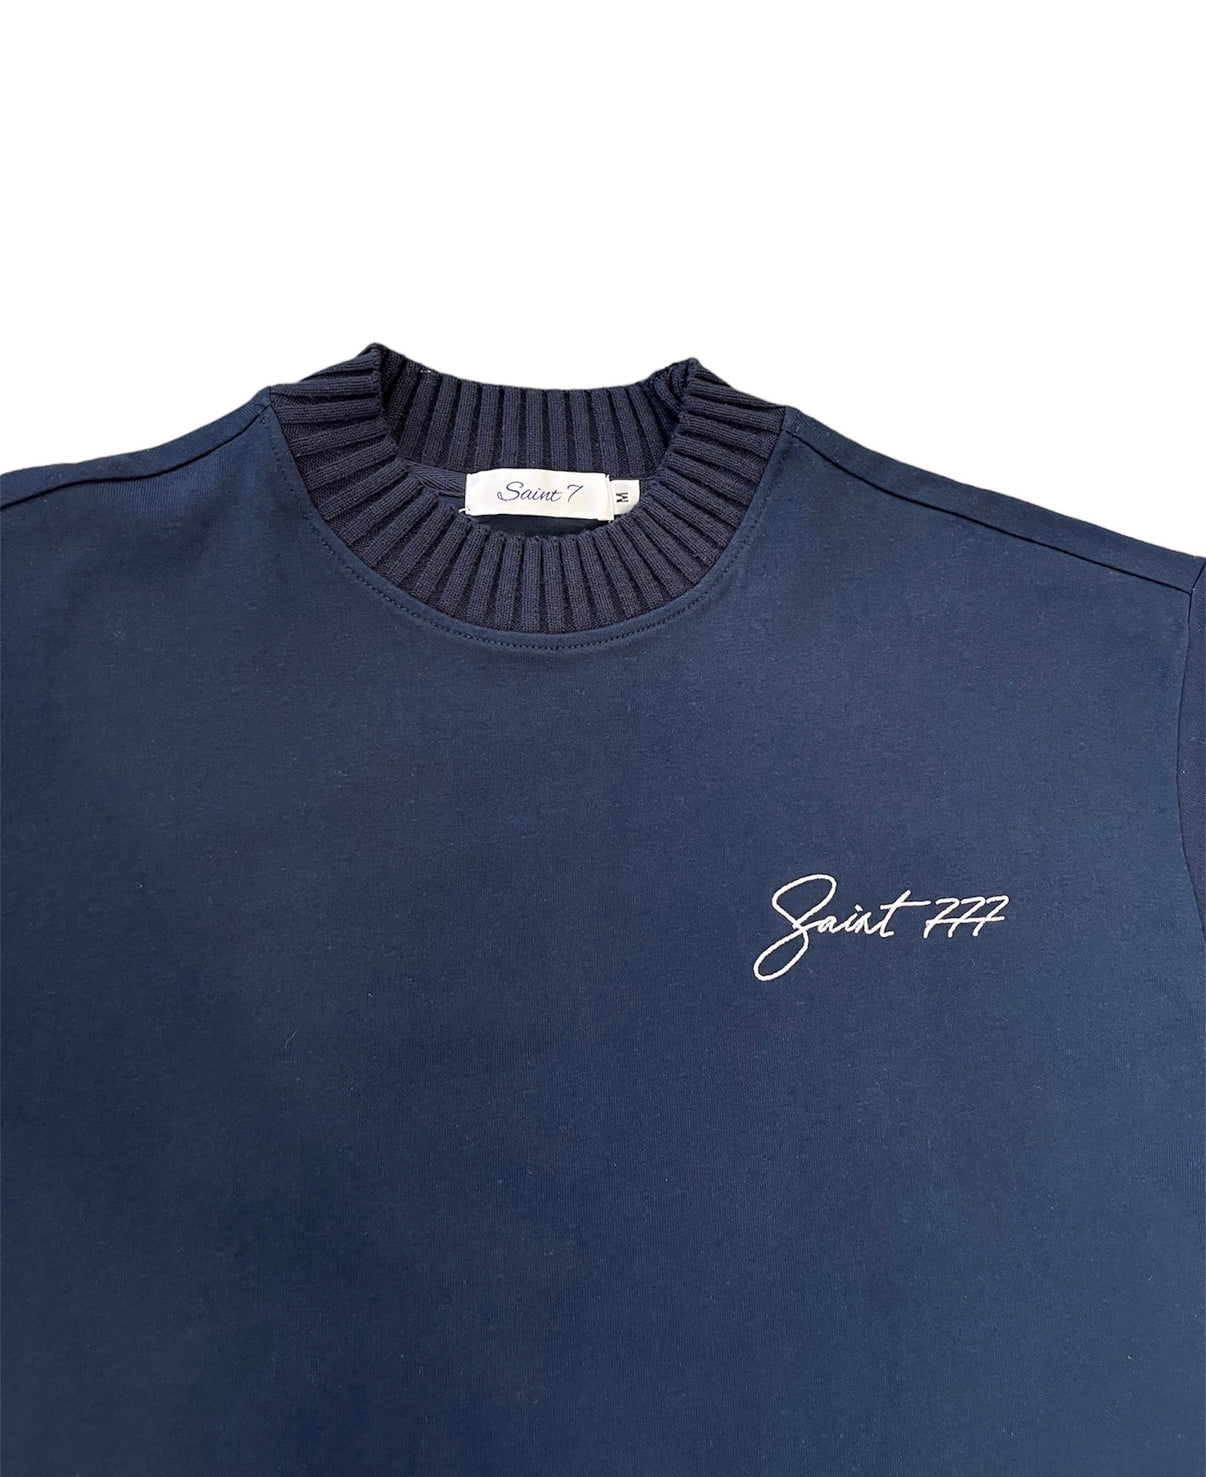 Navy Blue T-shirt – Saint 777